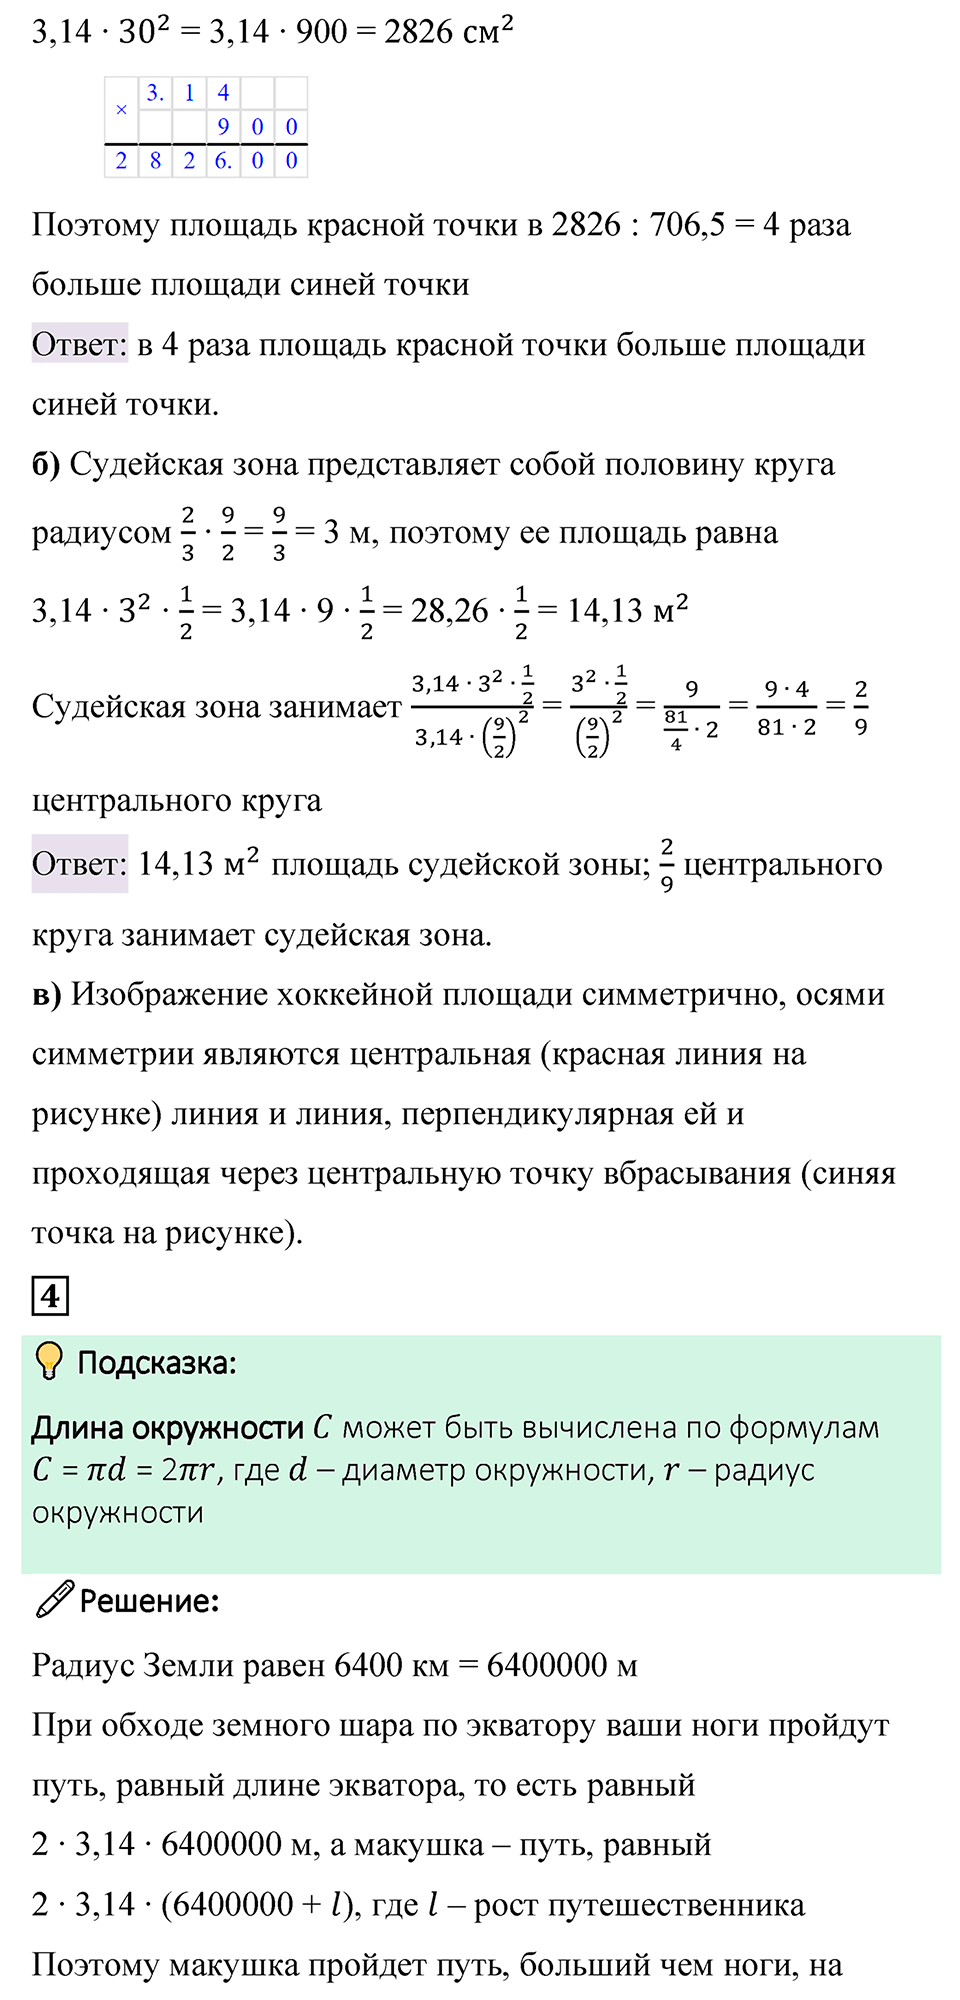 cтраница 154 применяем математику математика 6 класс Виленкин часть 1 просвещение ФГОС 2023